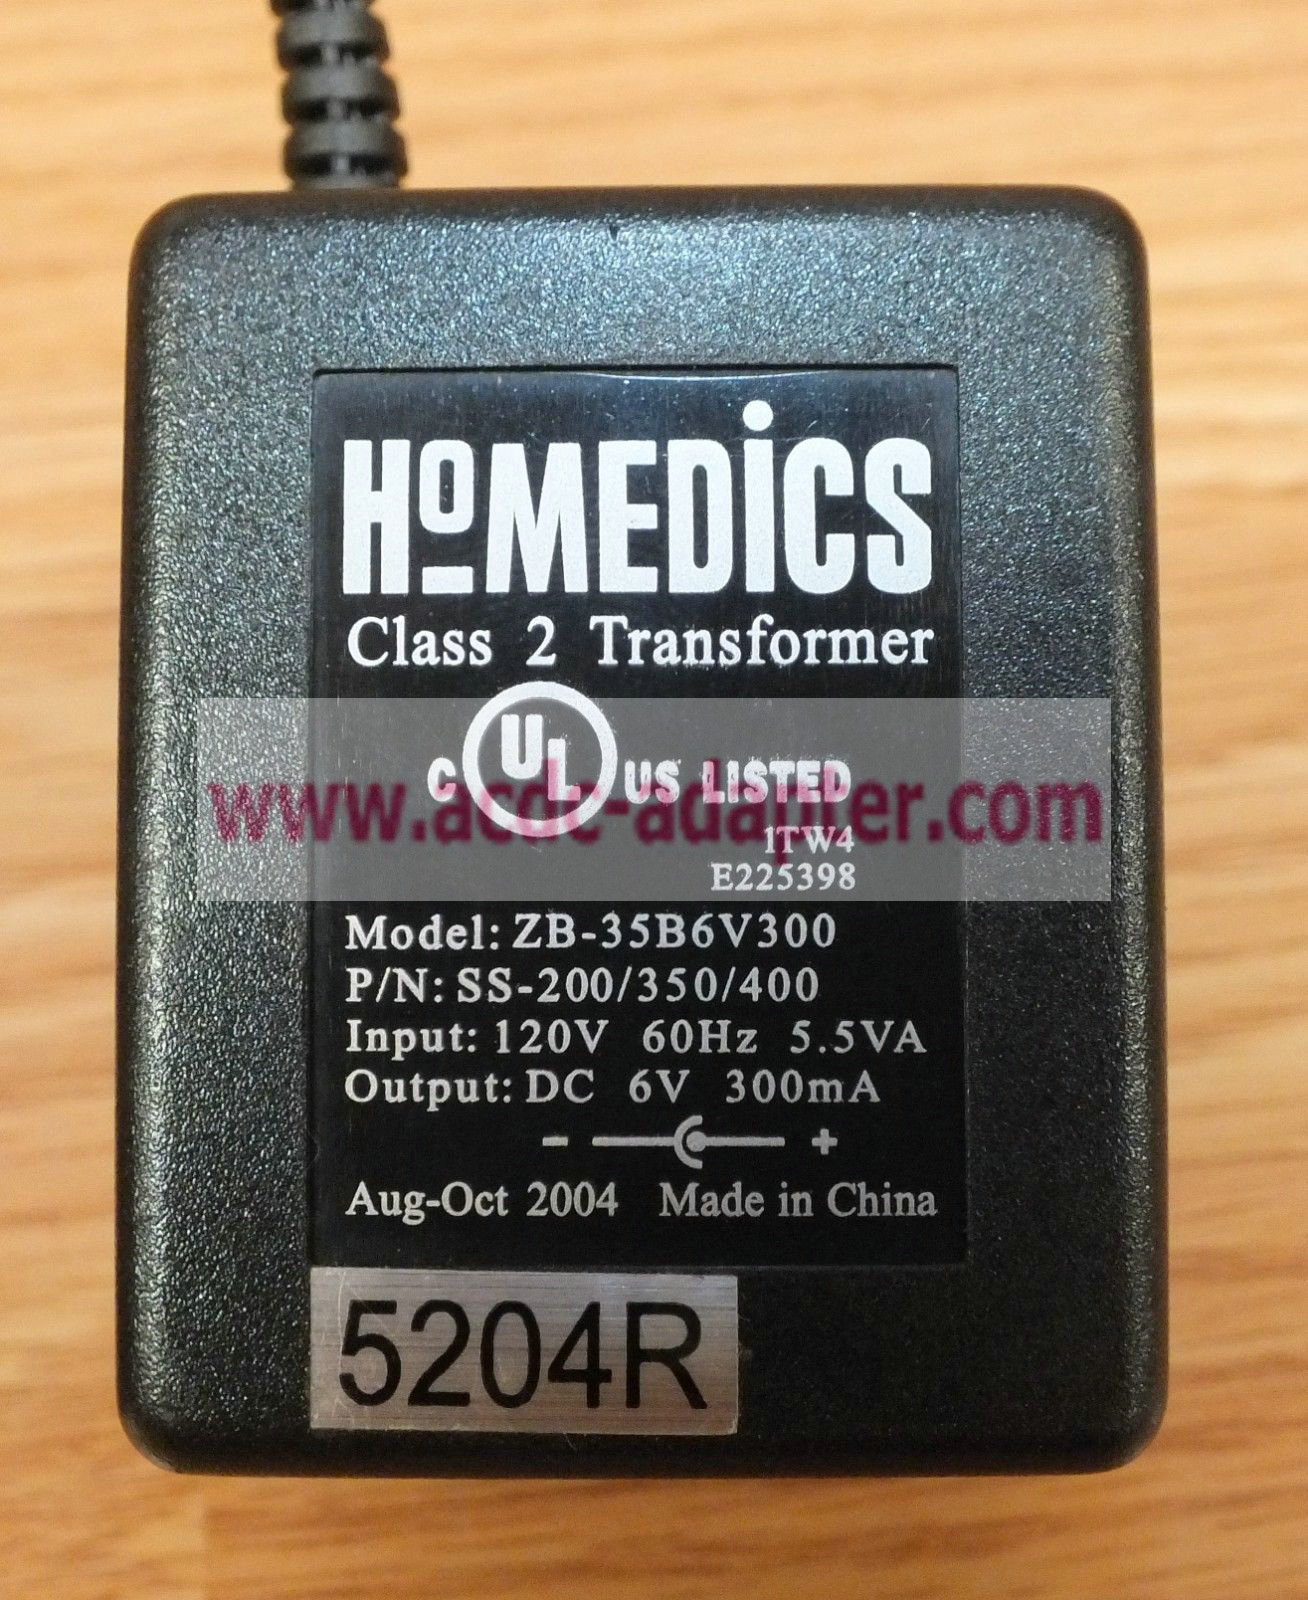 New Homedics 6V 300mA ZB-35B6V300 SS-200/350/400 Class 2 Transformer Power Supply - Click Image to Close